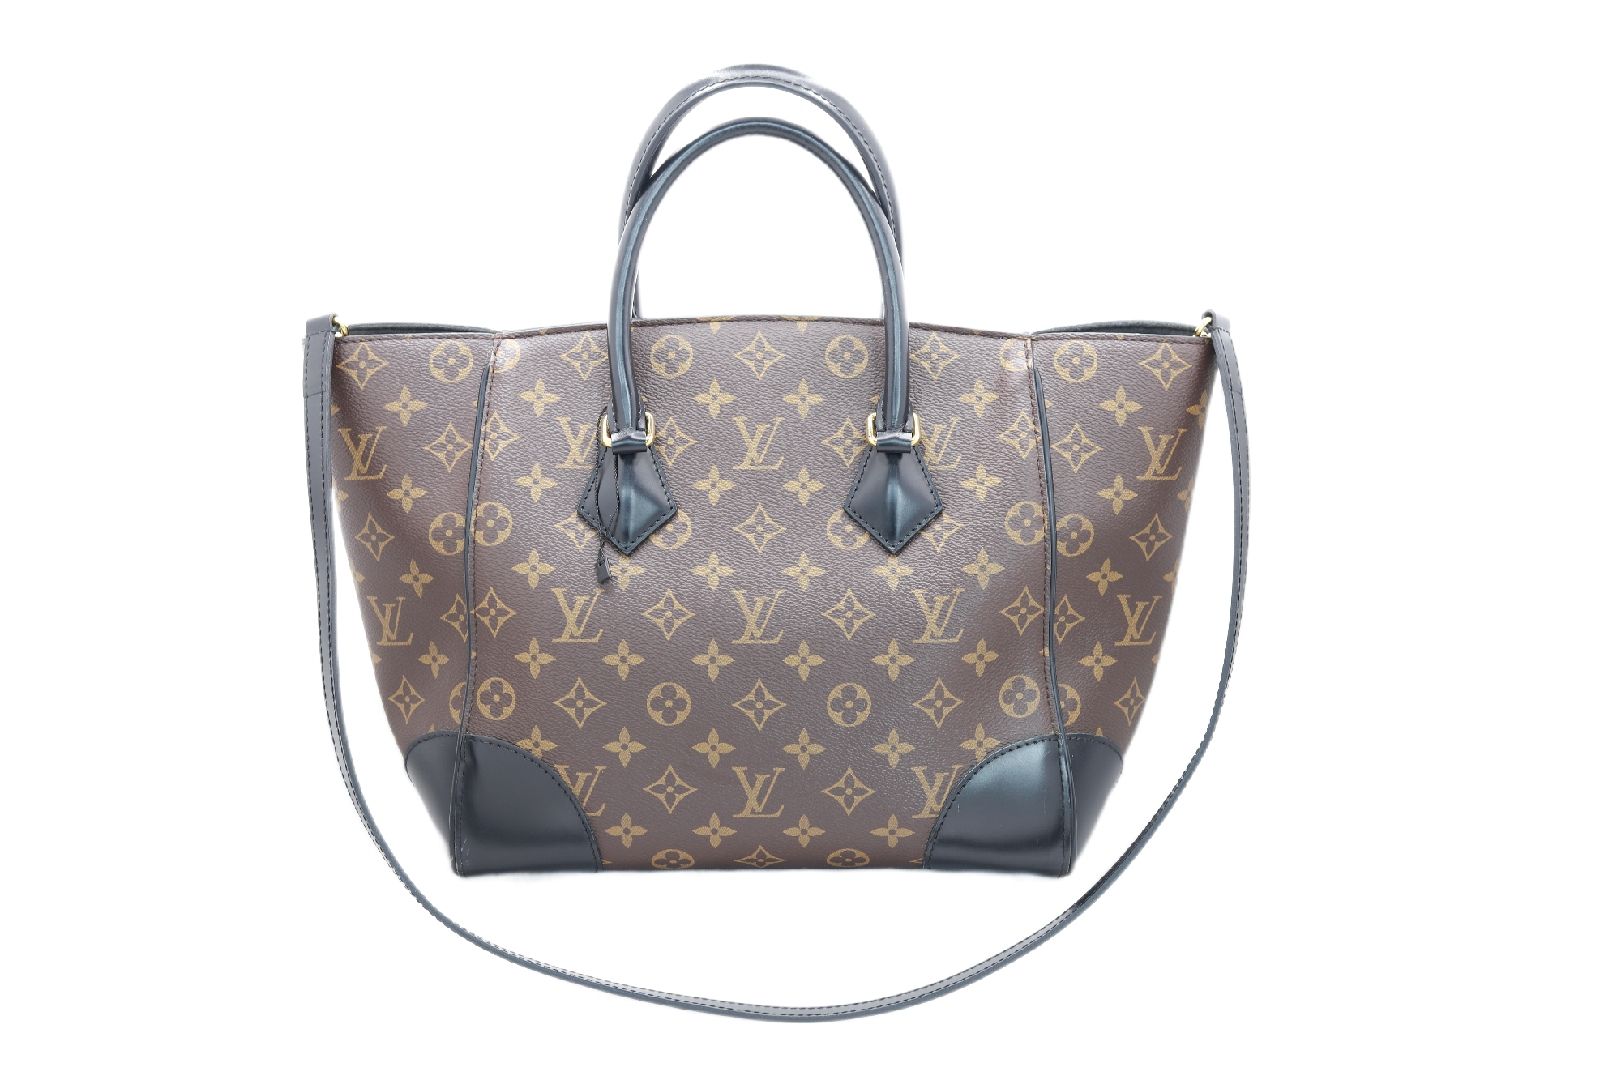 Louis Vuitton phenix – oneboldshop